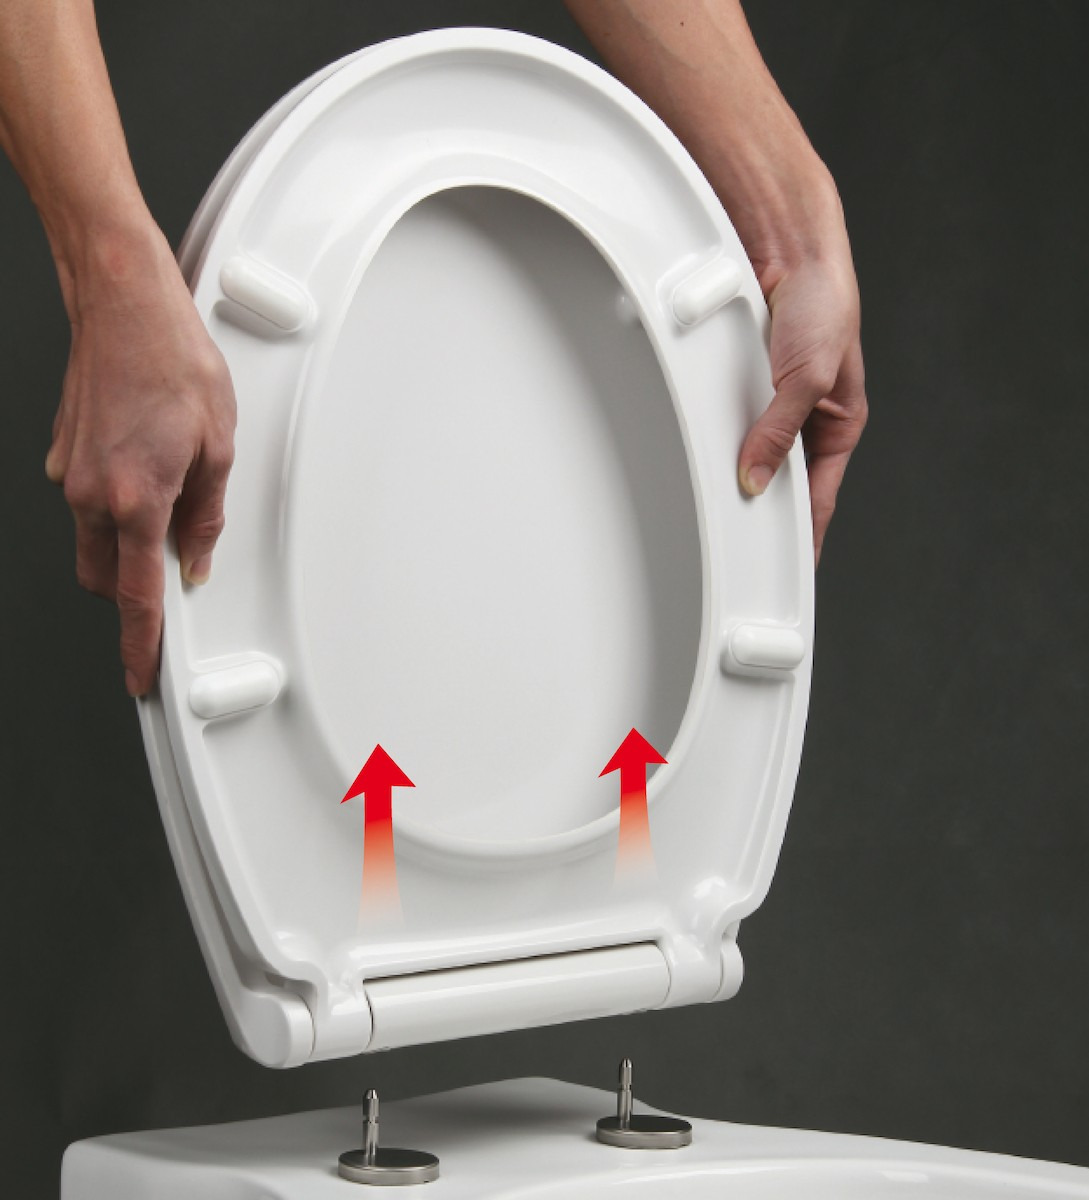 Abattant WC siège de toilette en forme de D à fermeture douce pour